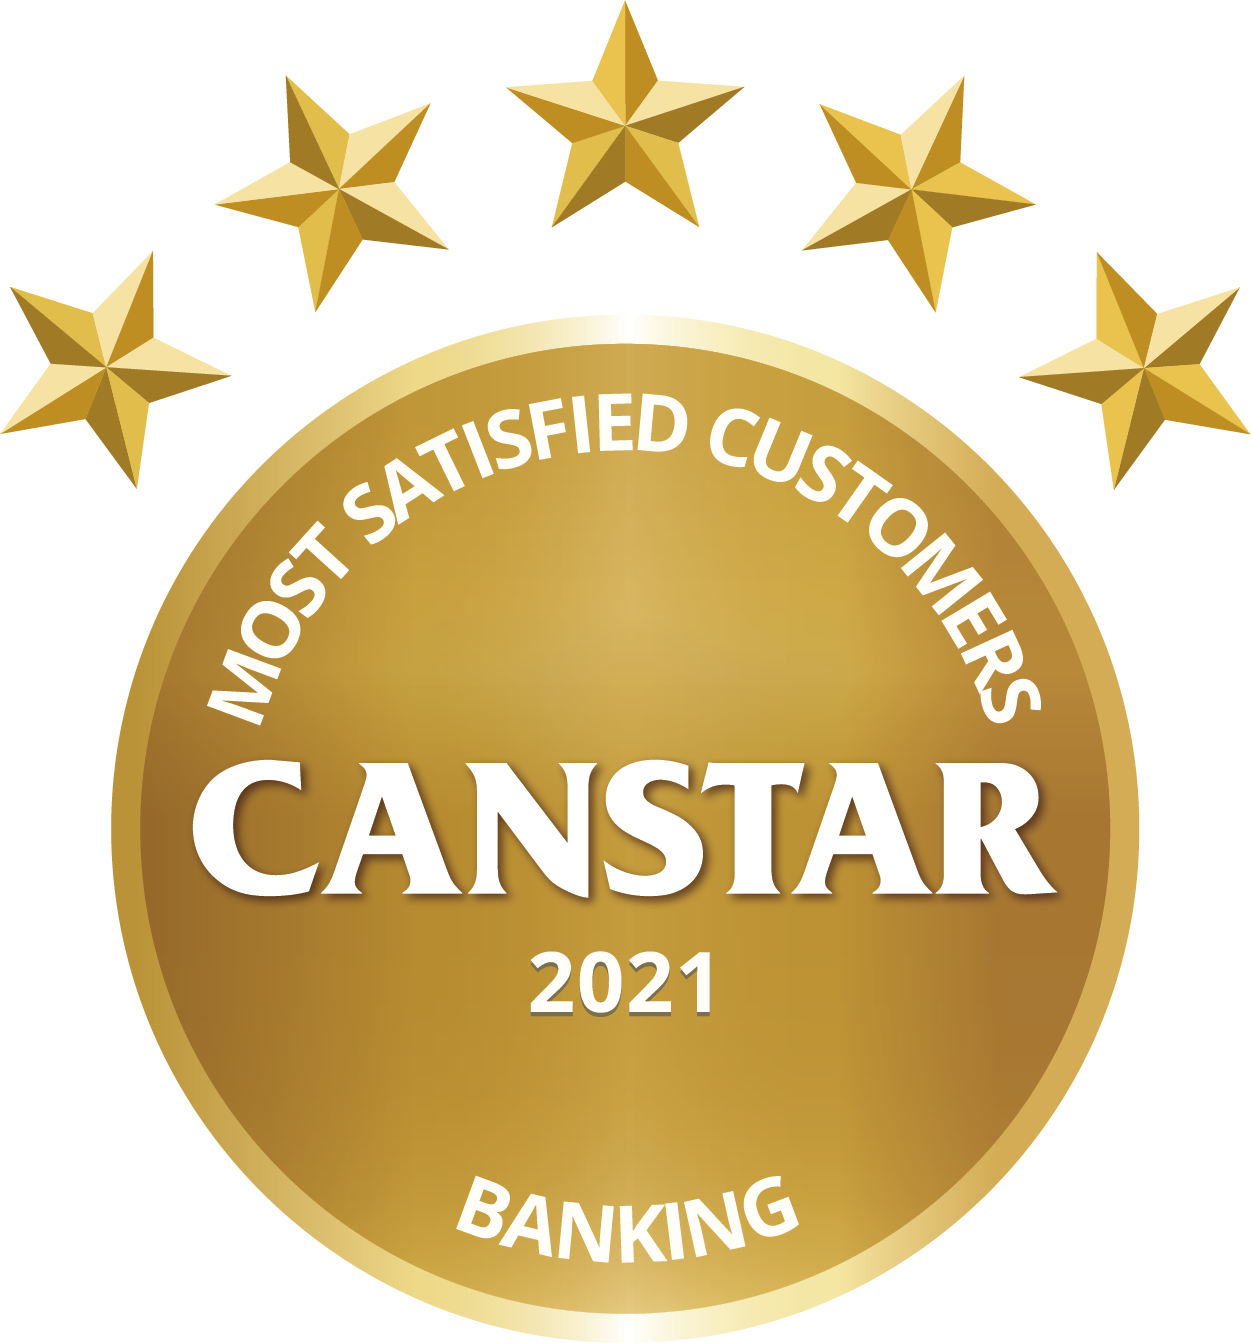 banking satisfaction award logo 2021